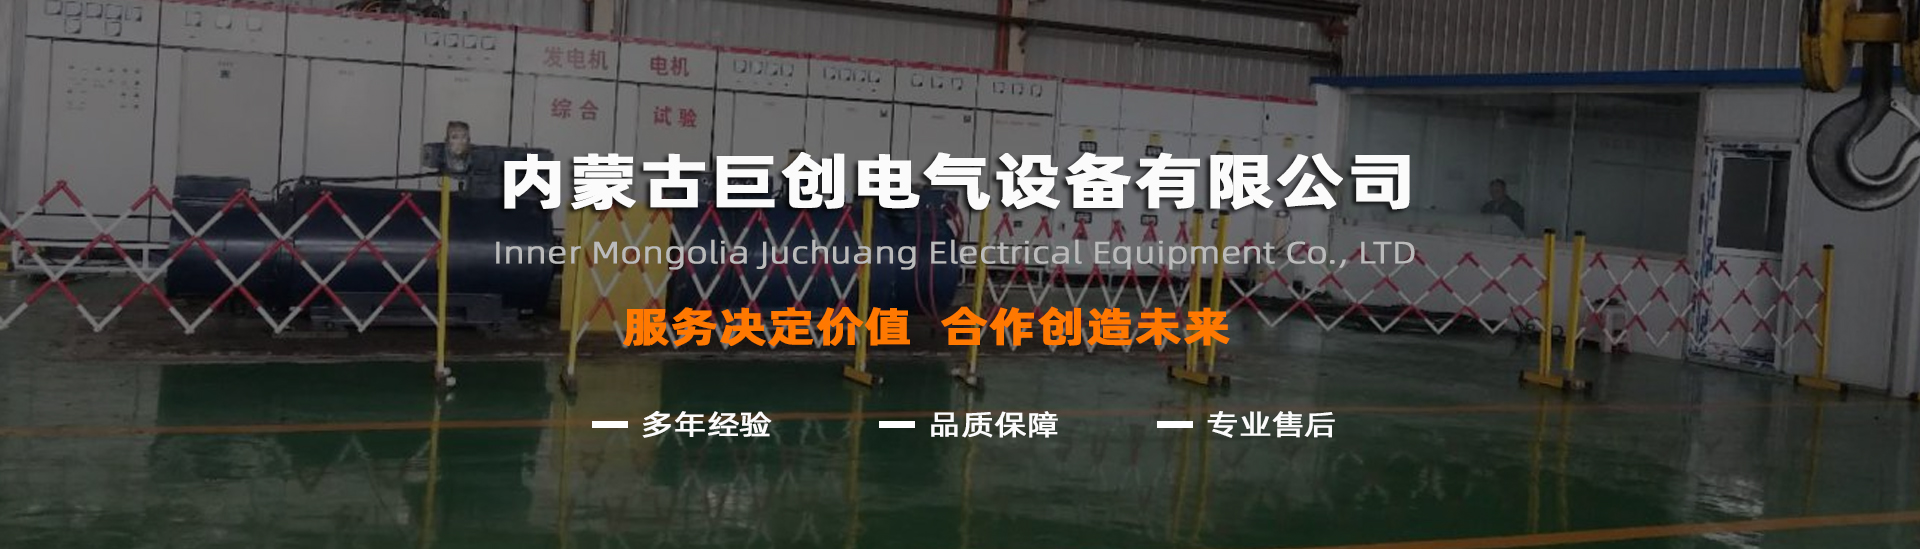 内蒙古巨创电气设备有限公司